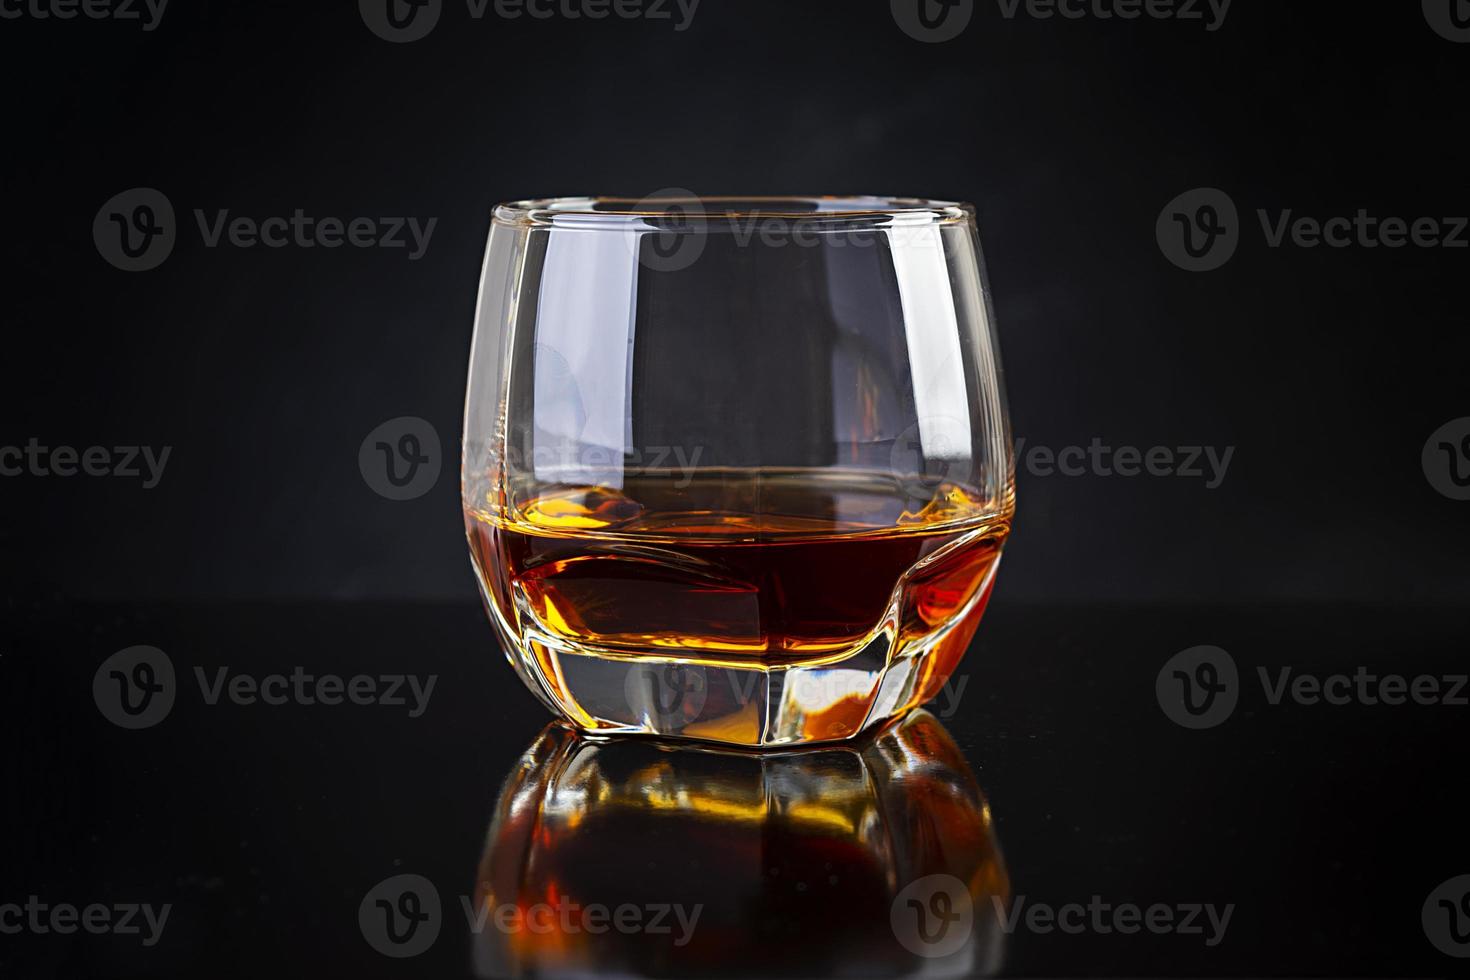 Glass of whiskey on dark background. photo